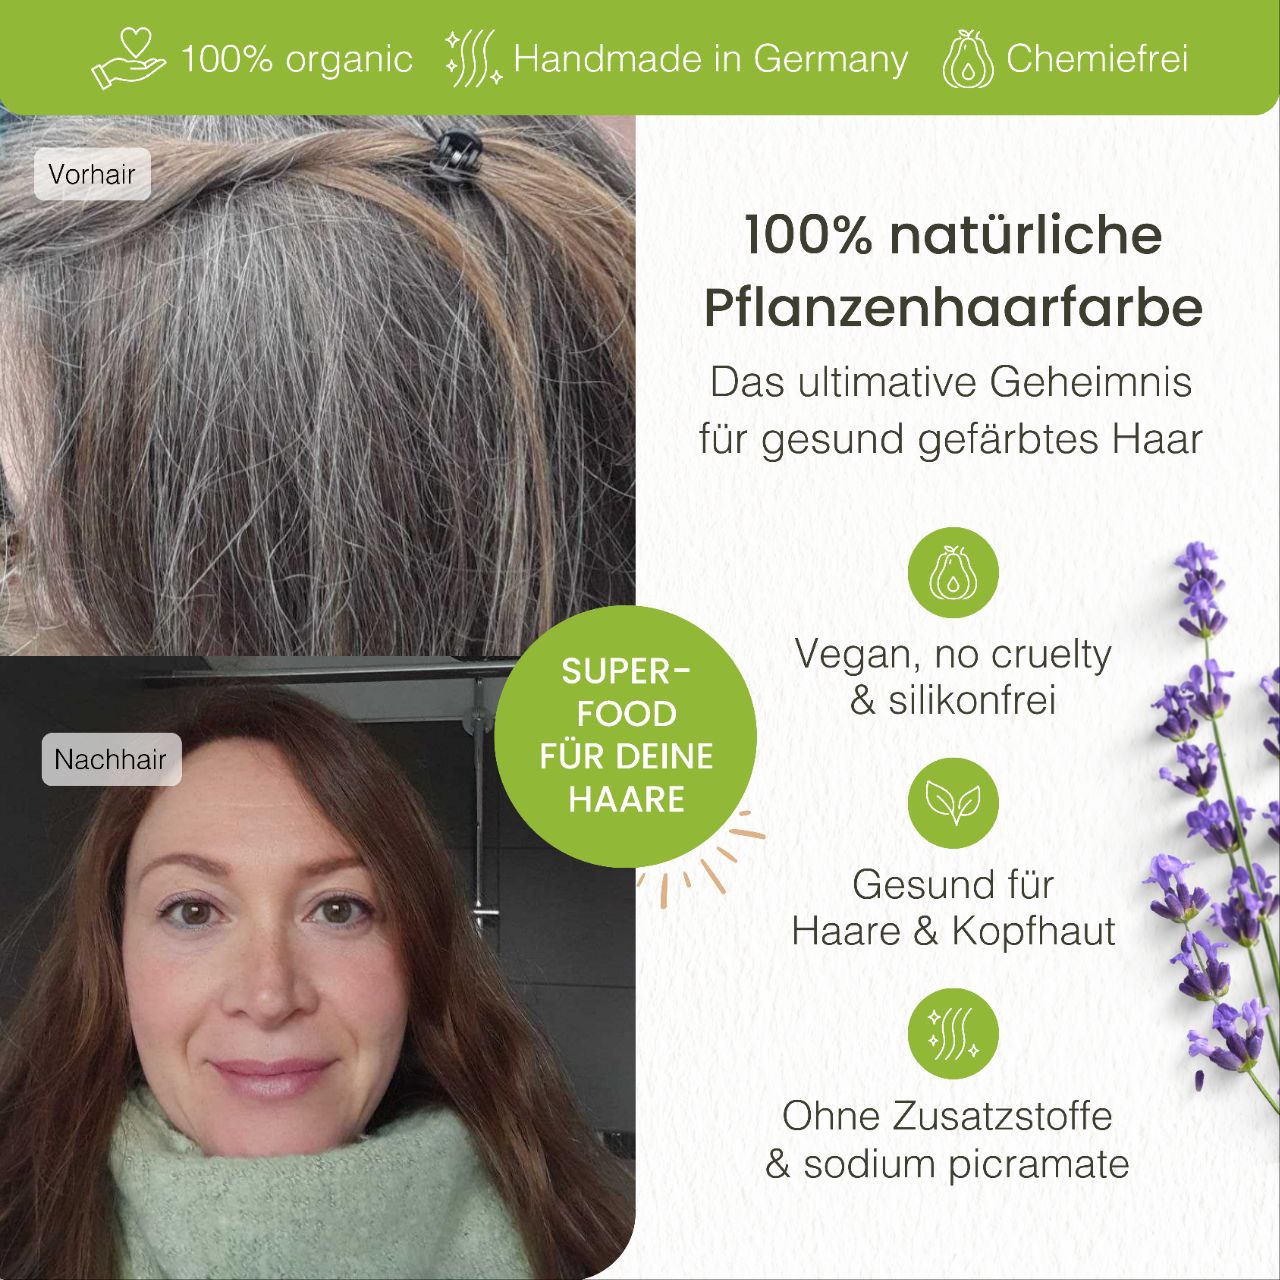 Limited Edition Profi-Pflanzenhaarfarbe farblose warm-schimmernde Volumen-Glanz-Haarpackung "warm shiny hair pack" 300g